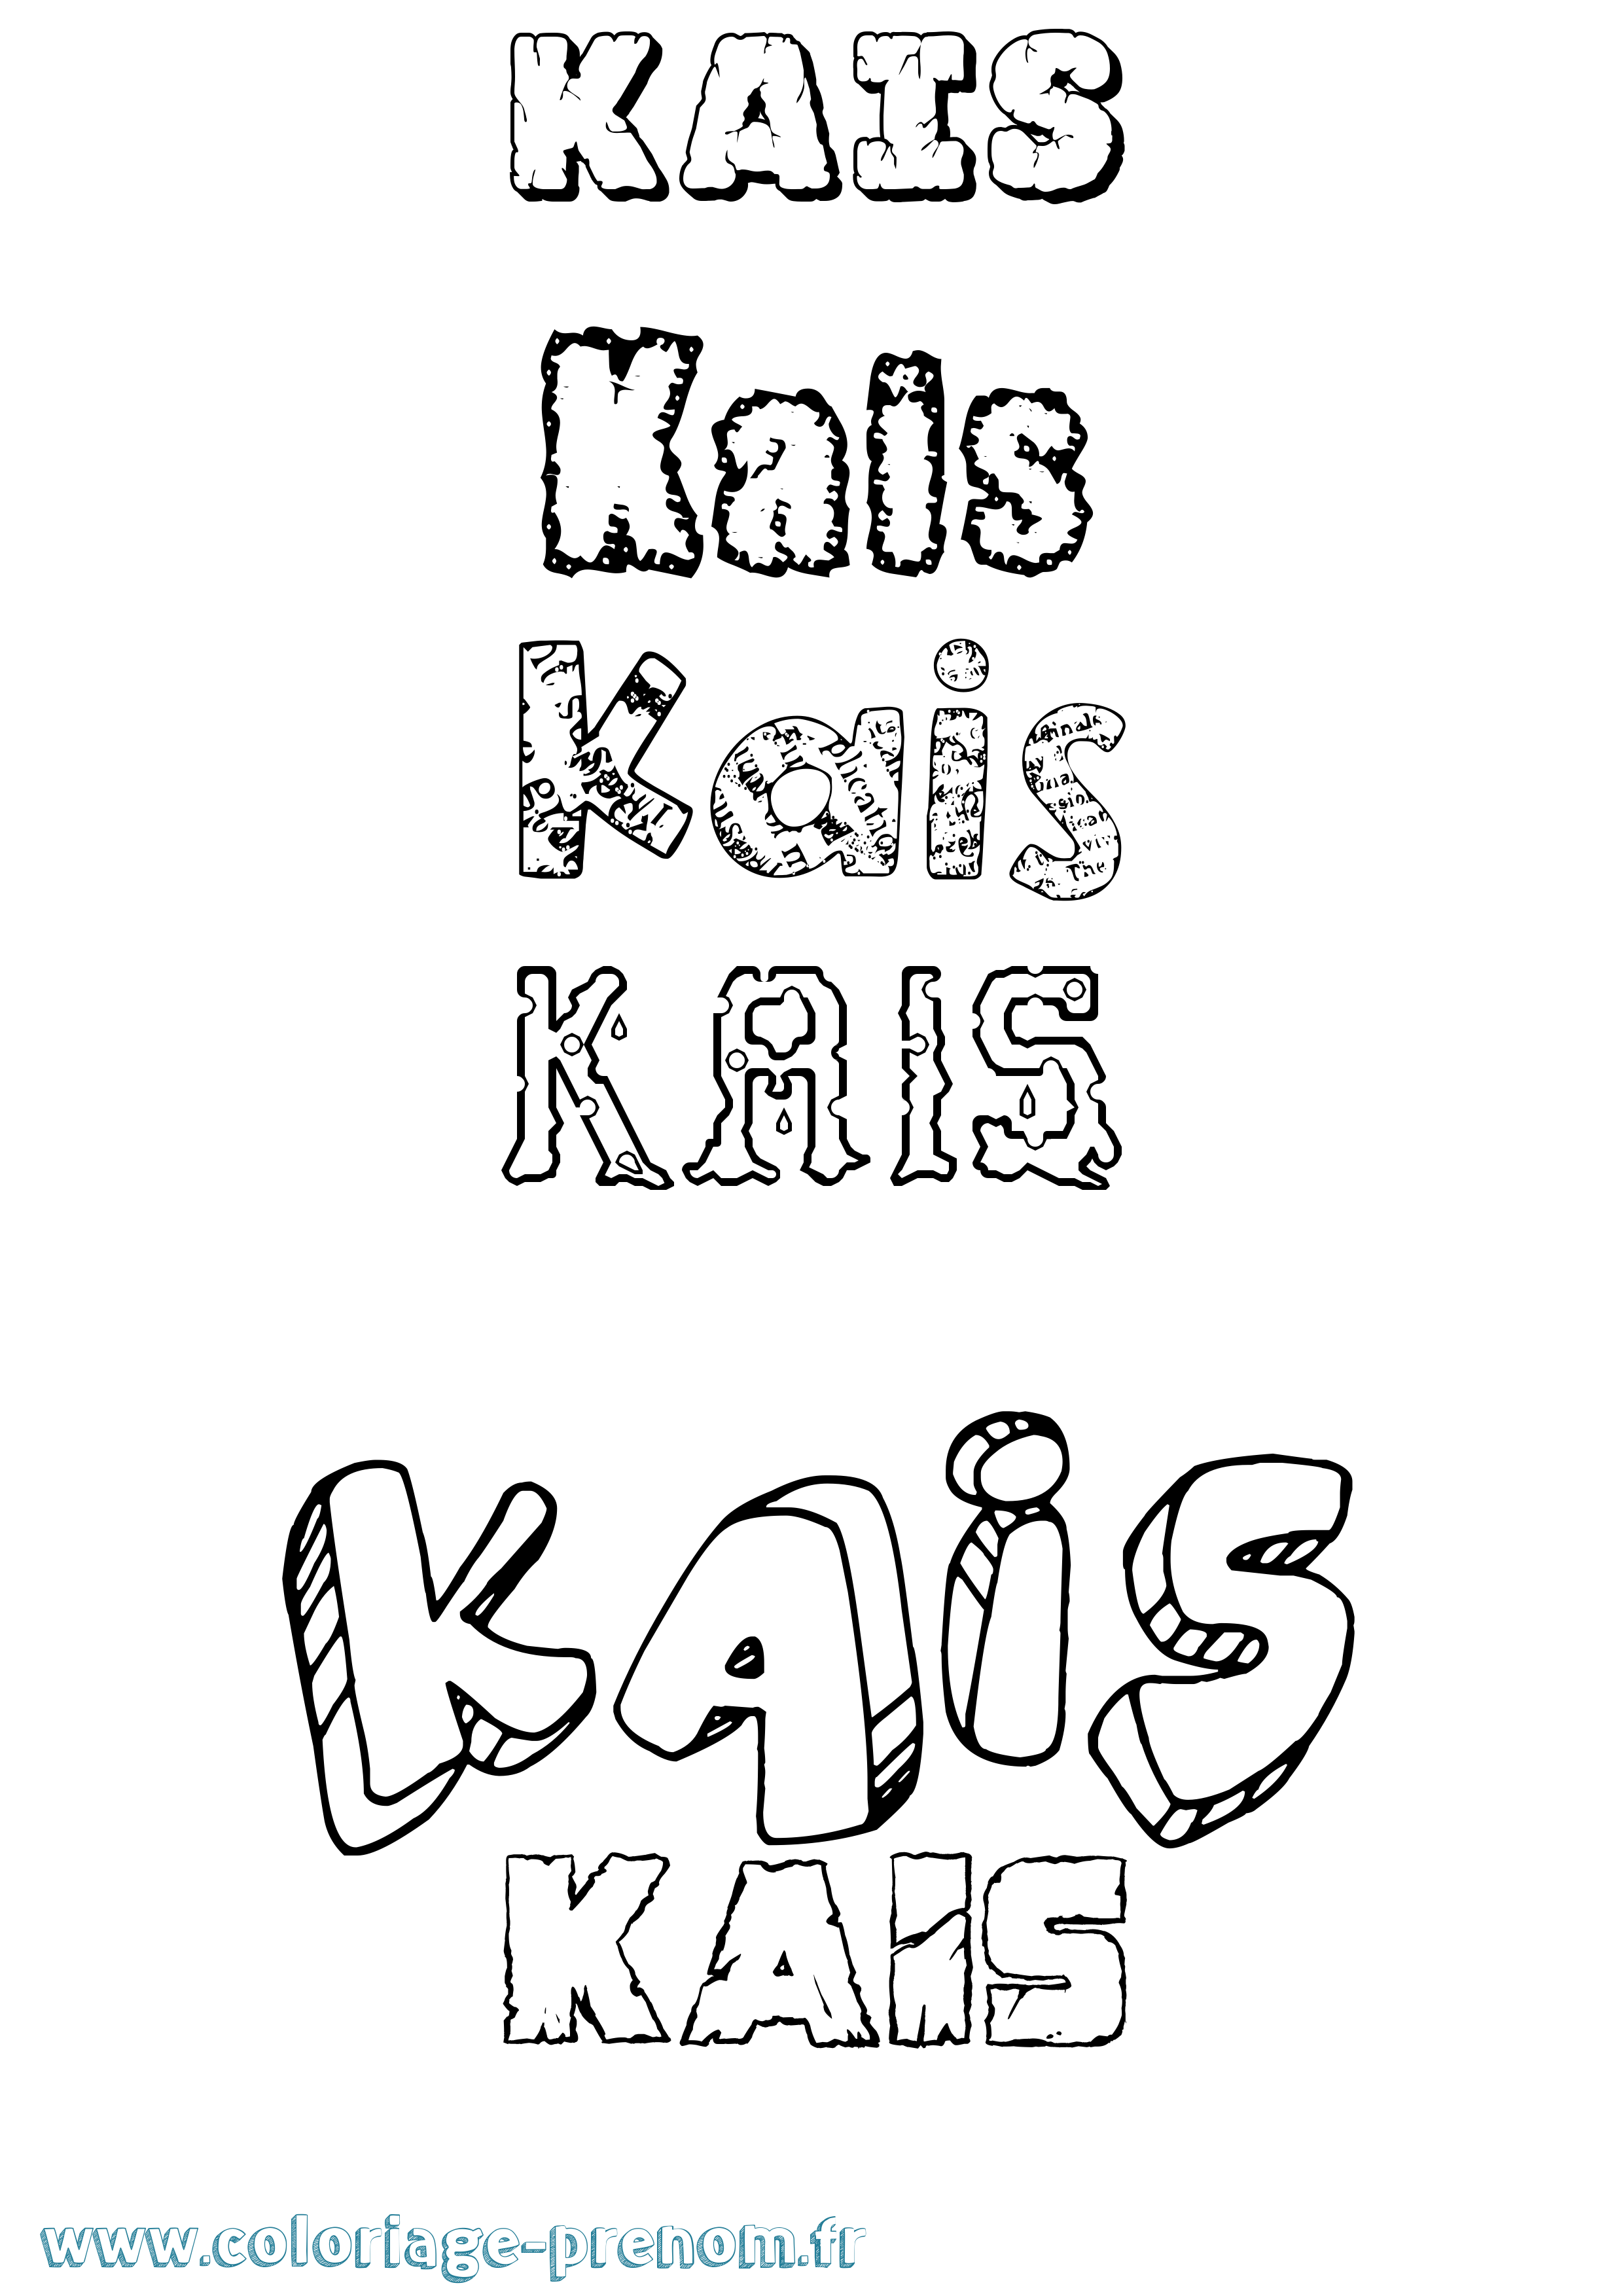 Coloriage prénom Kaïs